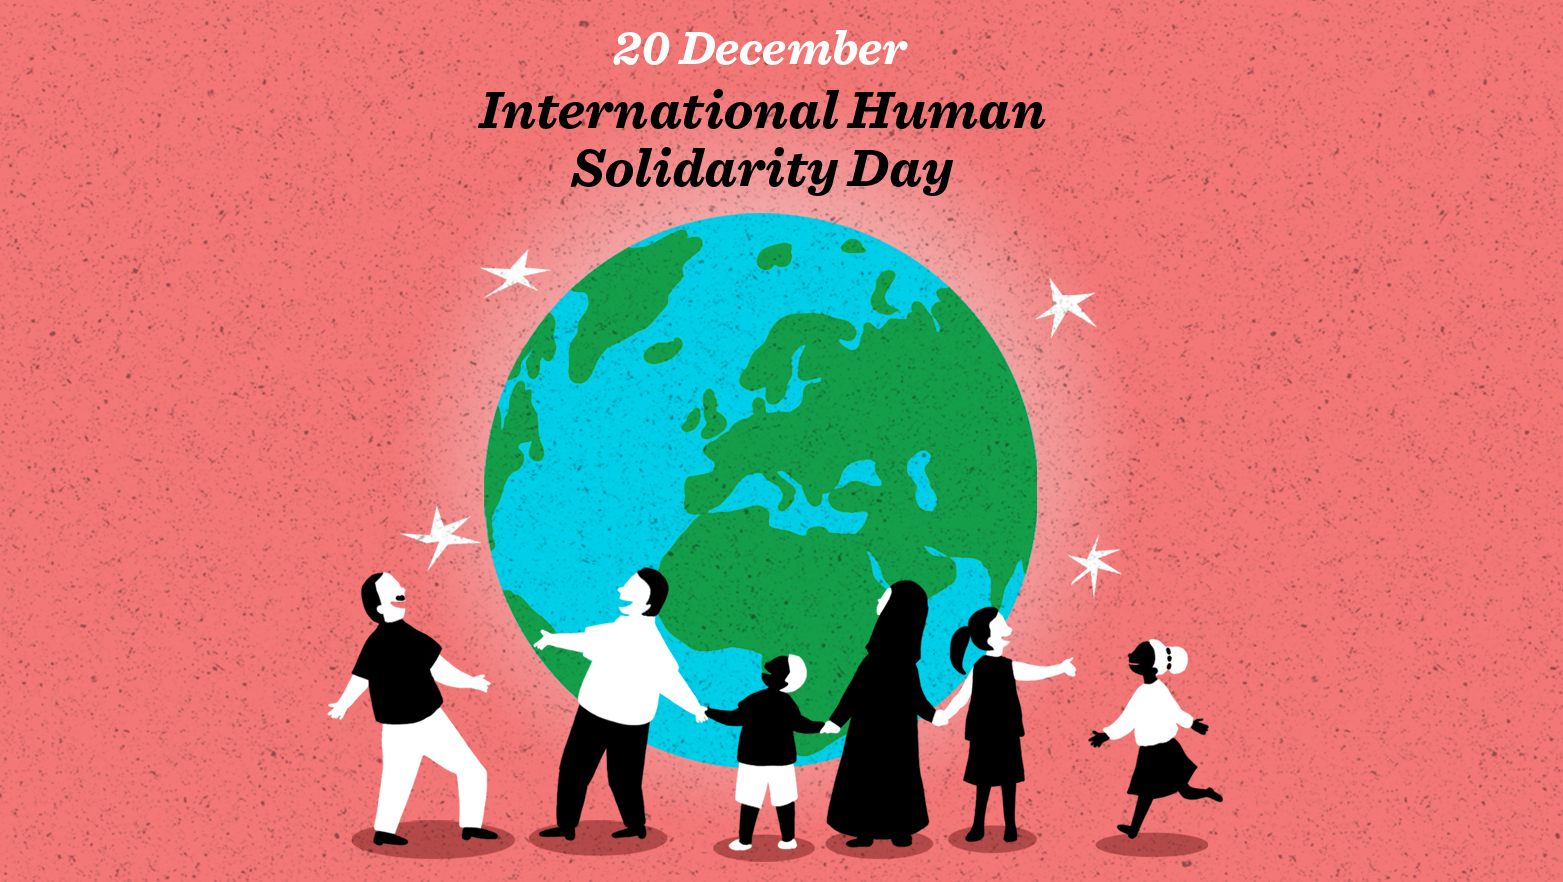 International Human Solidarity Day